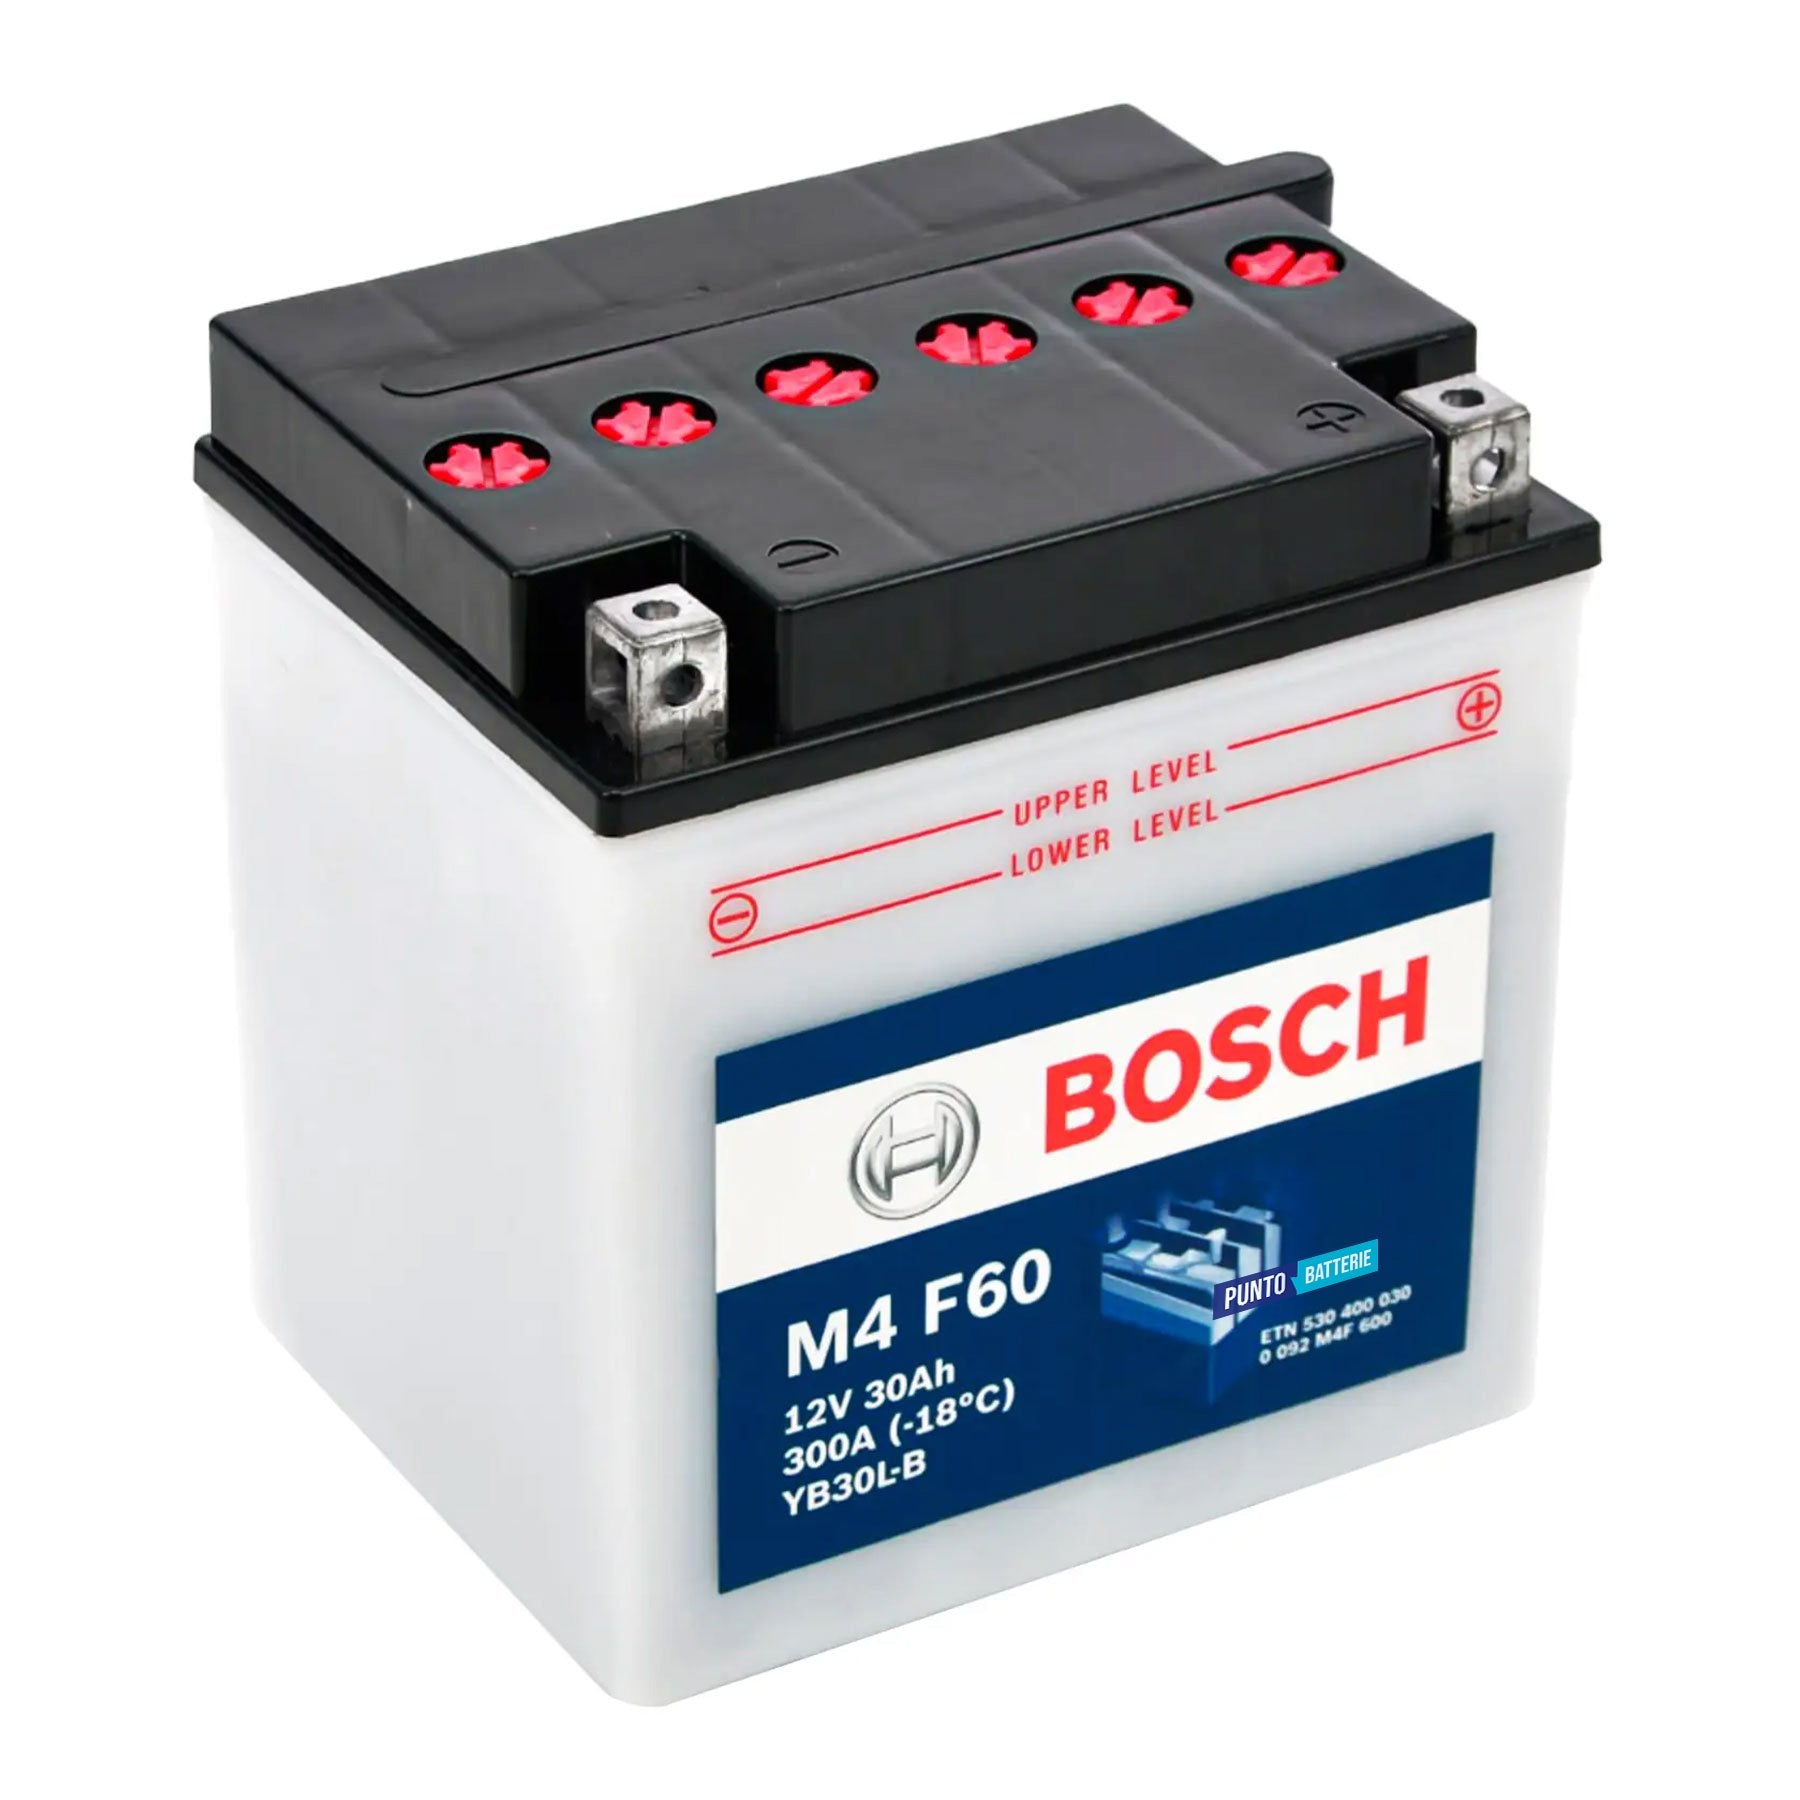 Batteria originale Bosch M4 M4F60, dimensioni 165 x 130 x 176, polo positivo a destra, 12 volt, 30 amperora, 300 ampere. Batteria per moto, scooter e powersport.